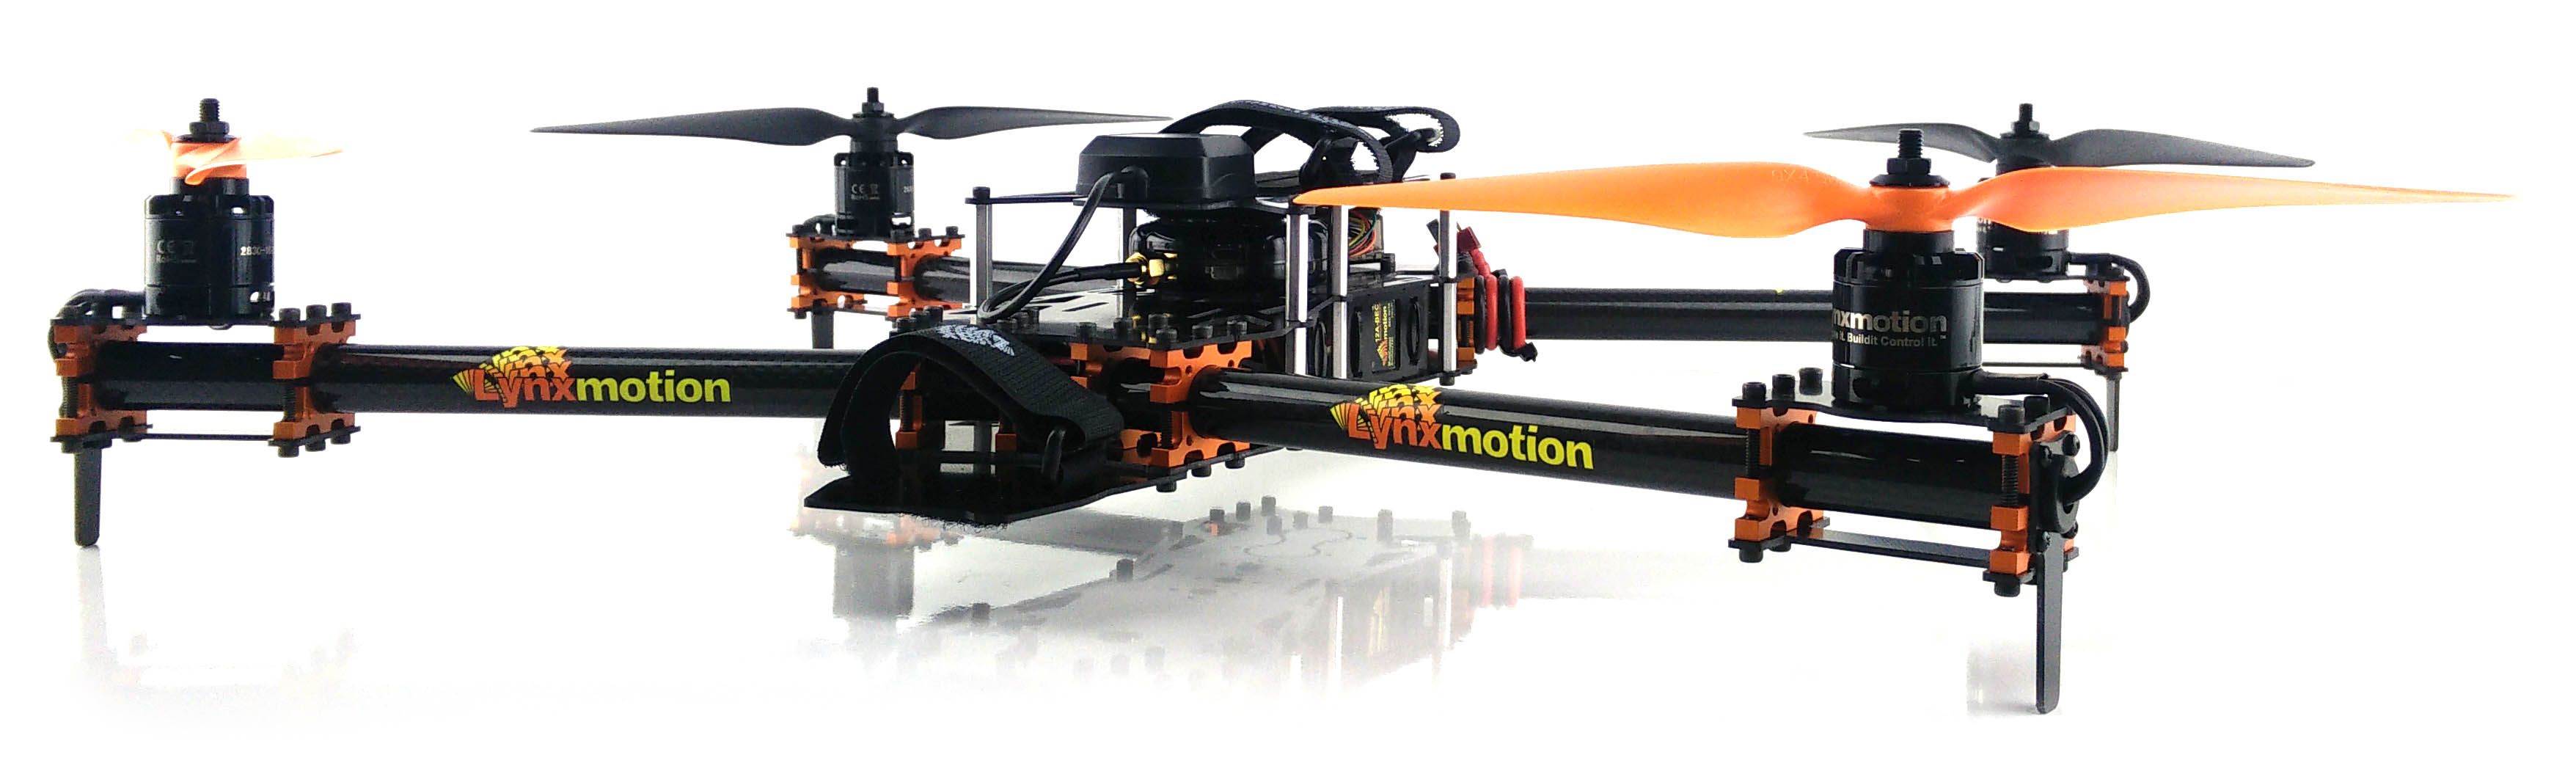 Dron HQuad500 Lynxmotion (Kit Combinado de Base)